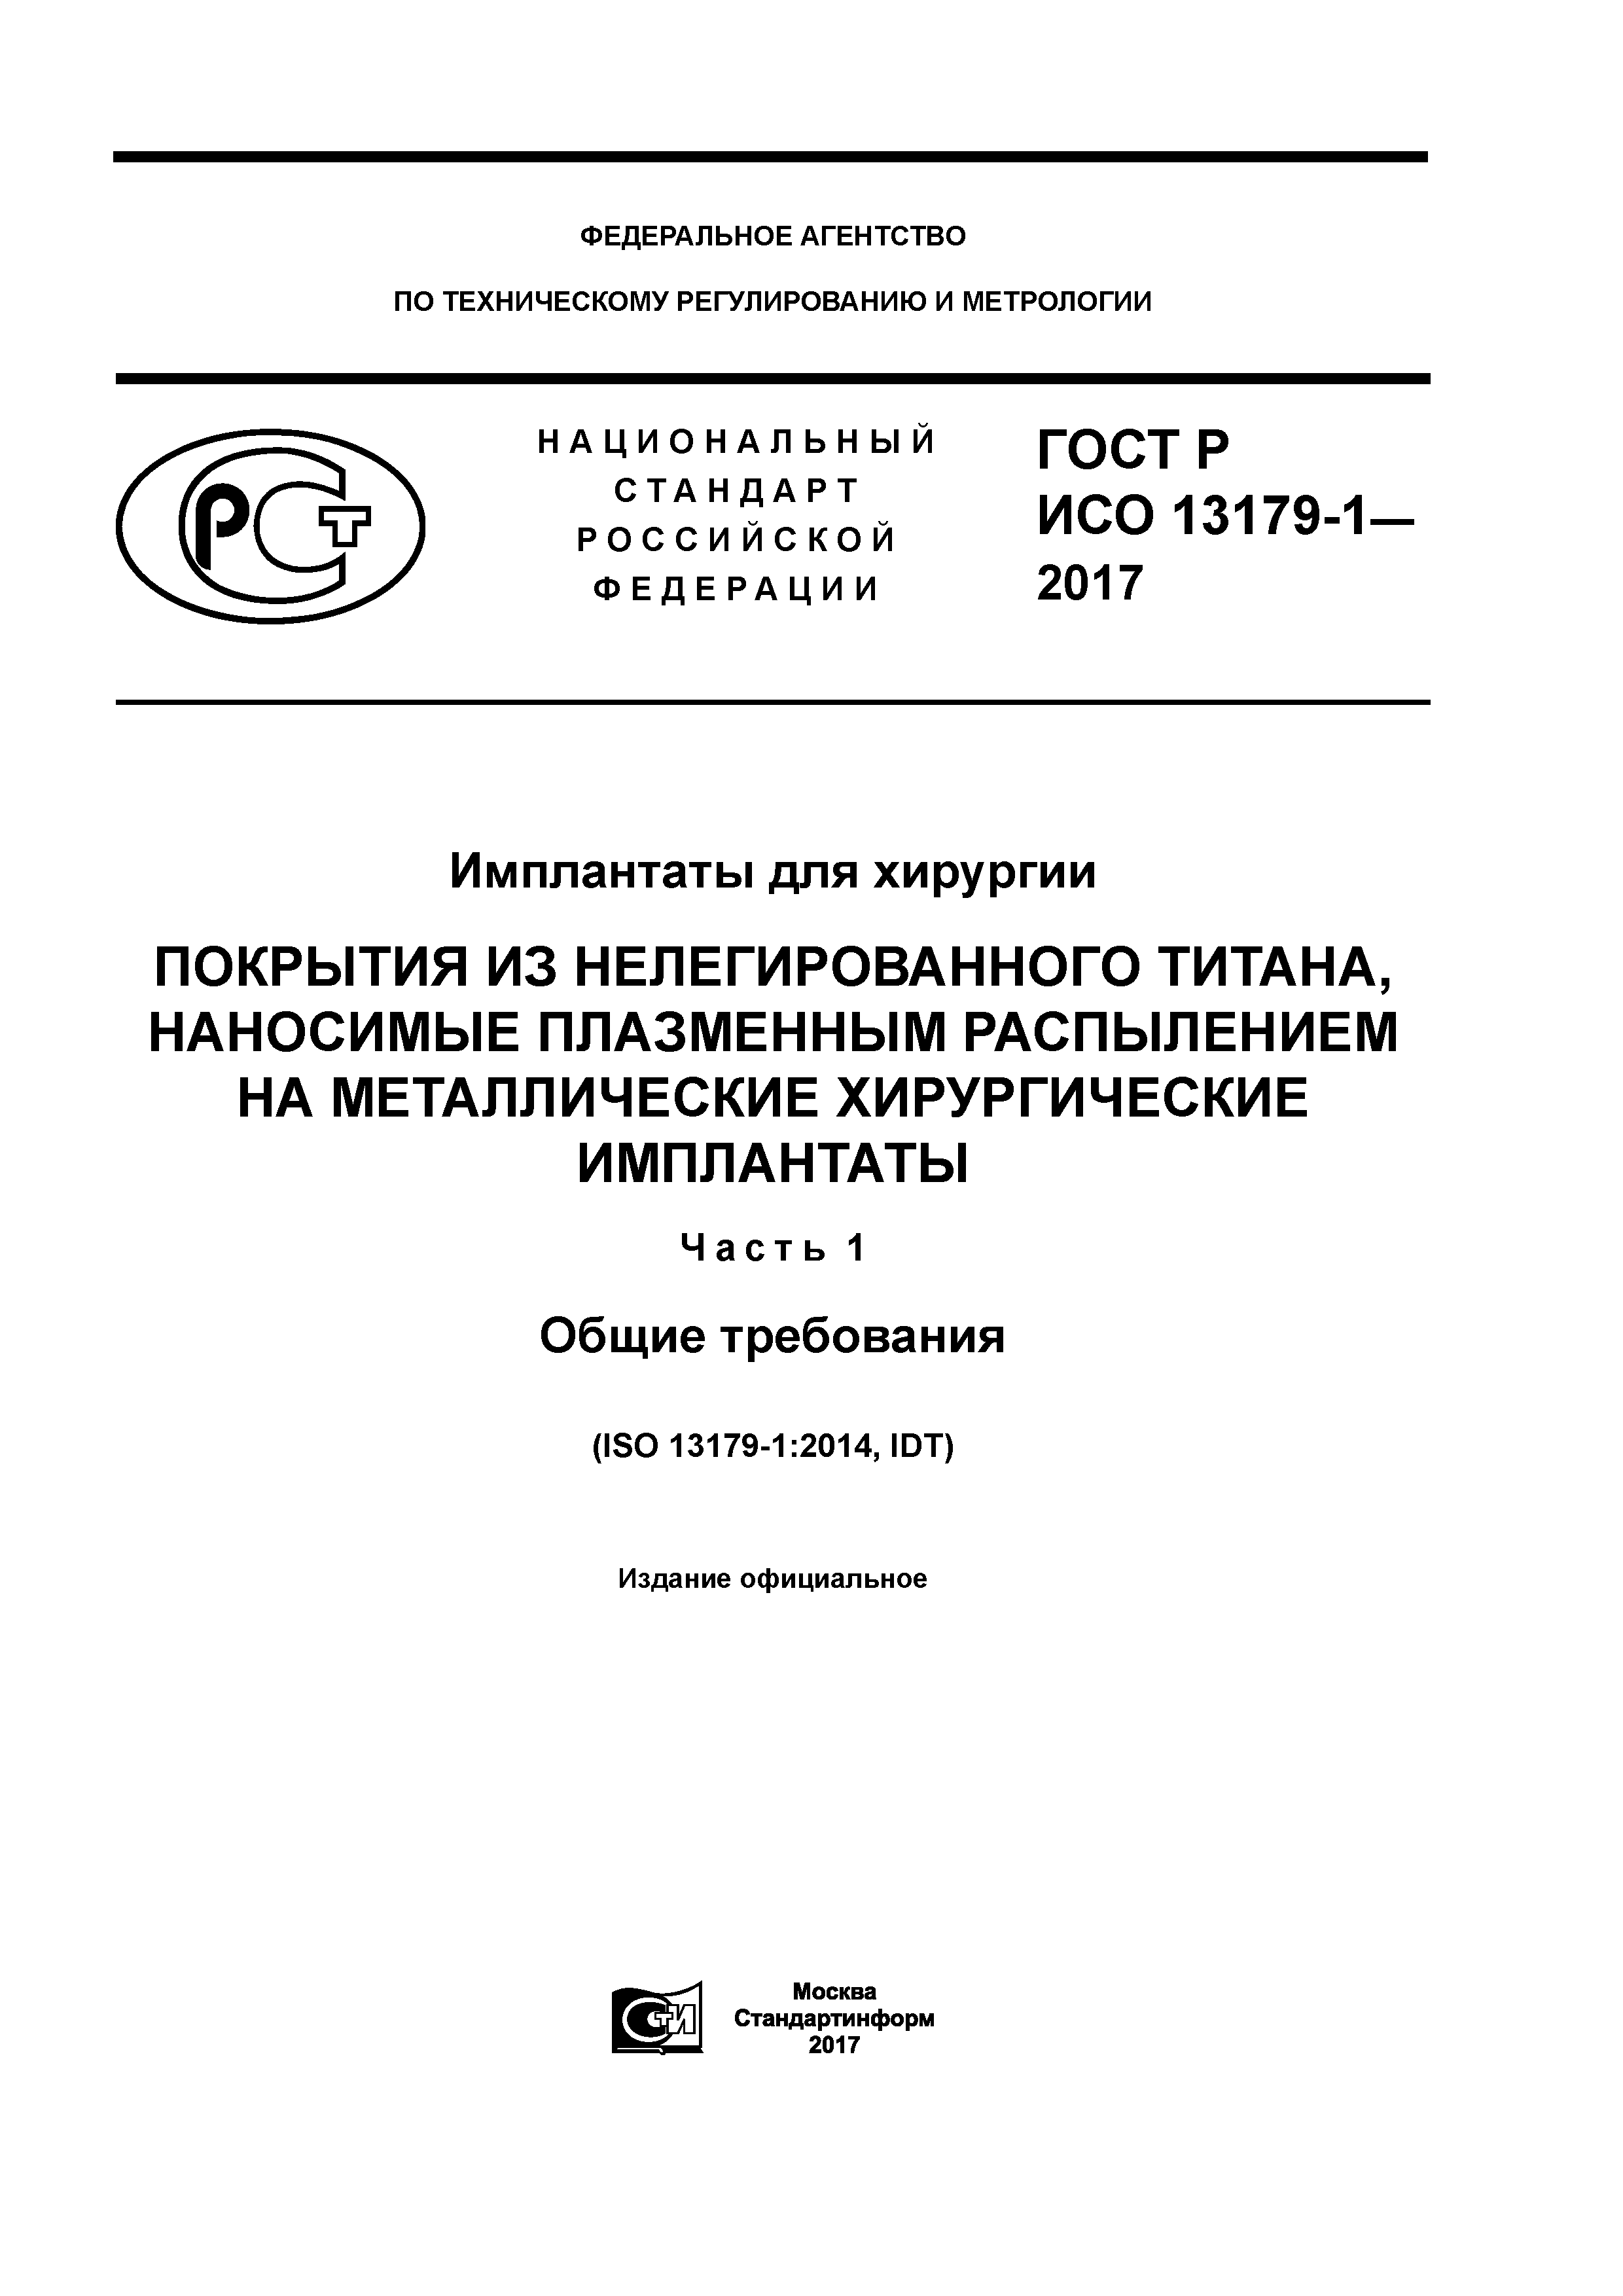 ГОСТ Р ИСО 13179-1-2017